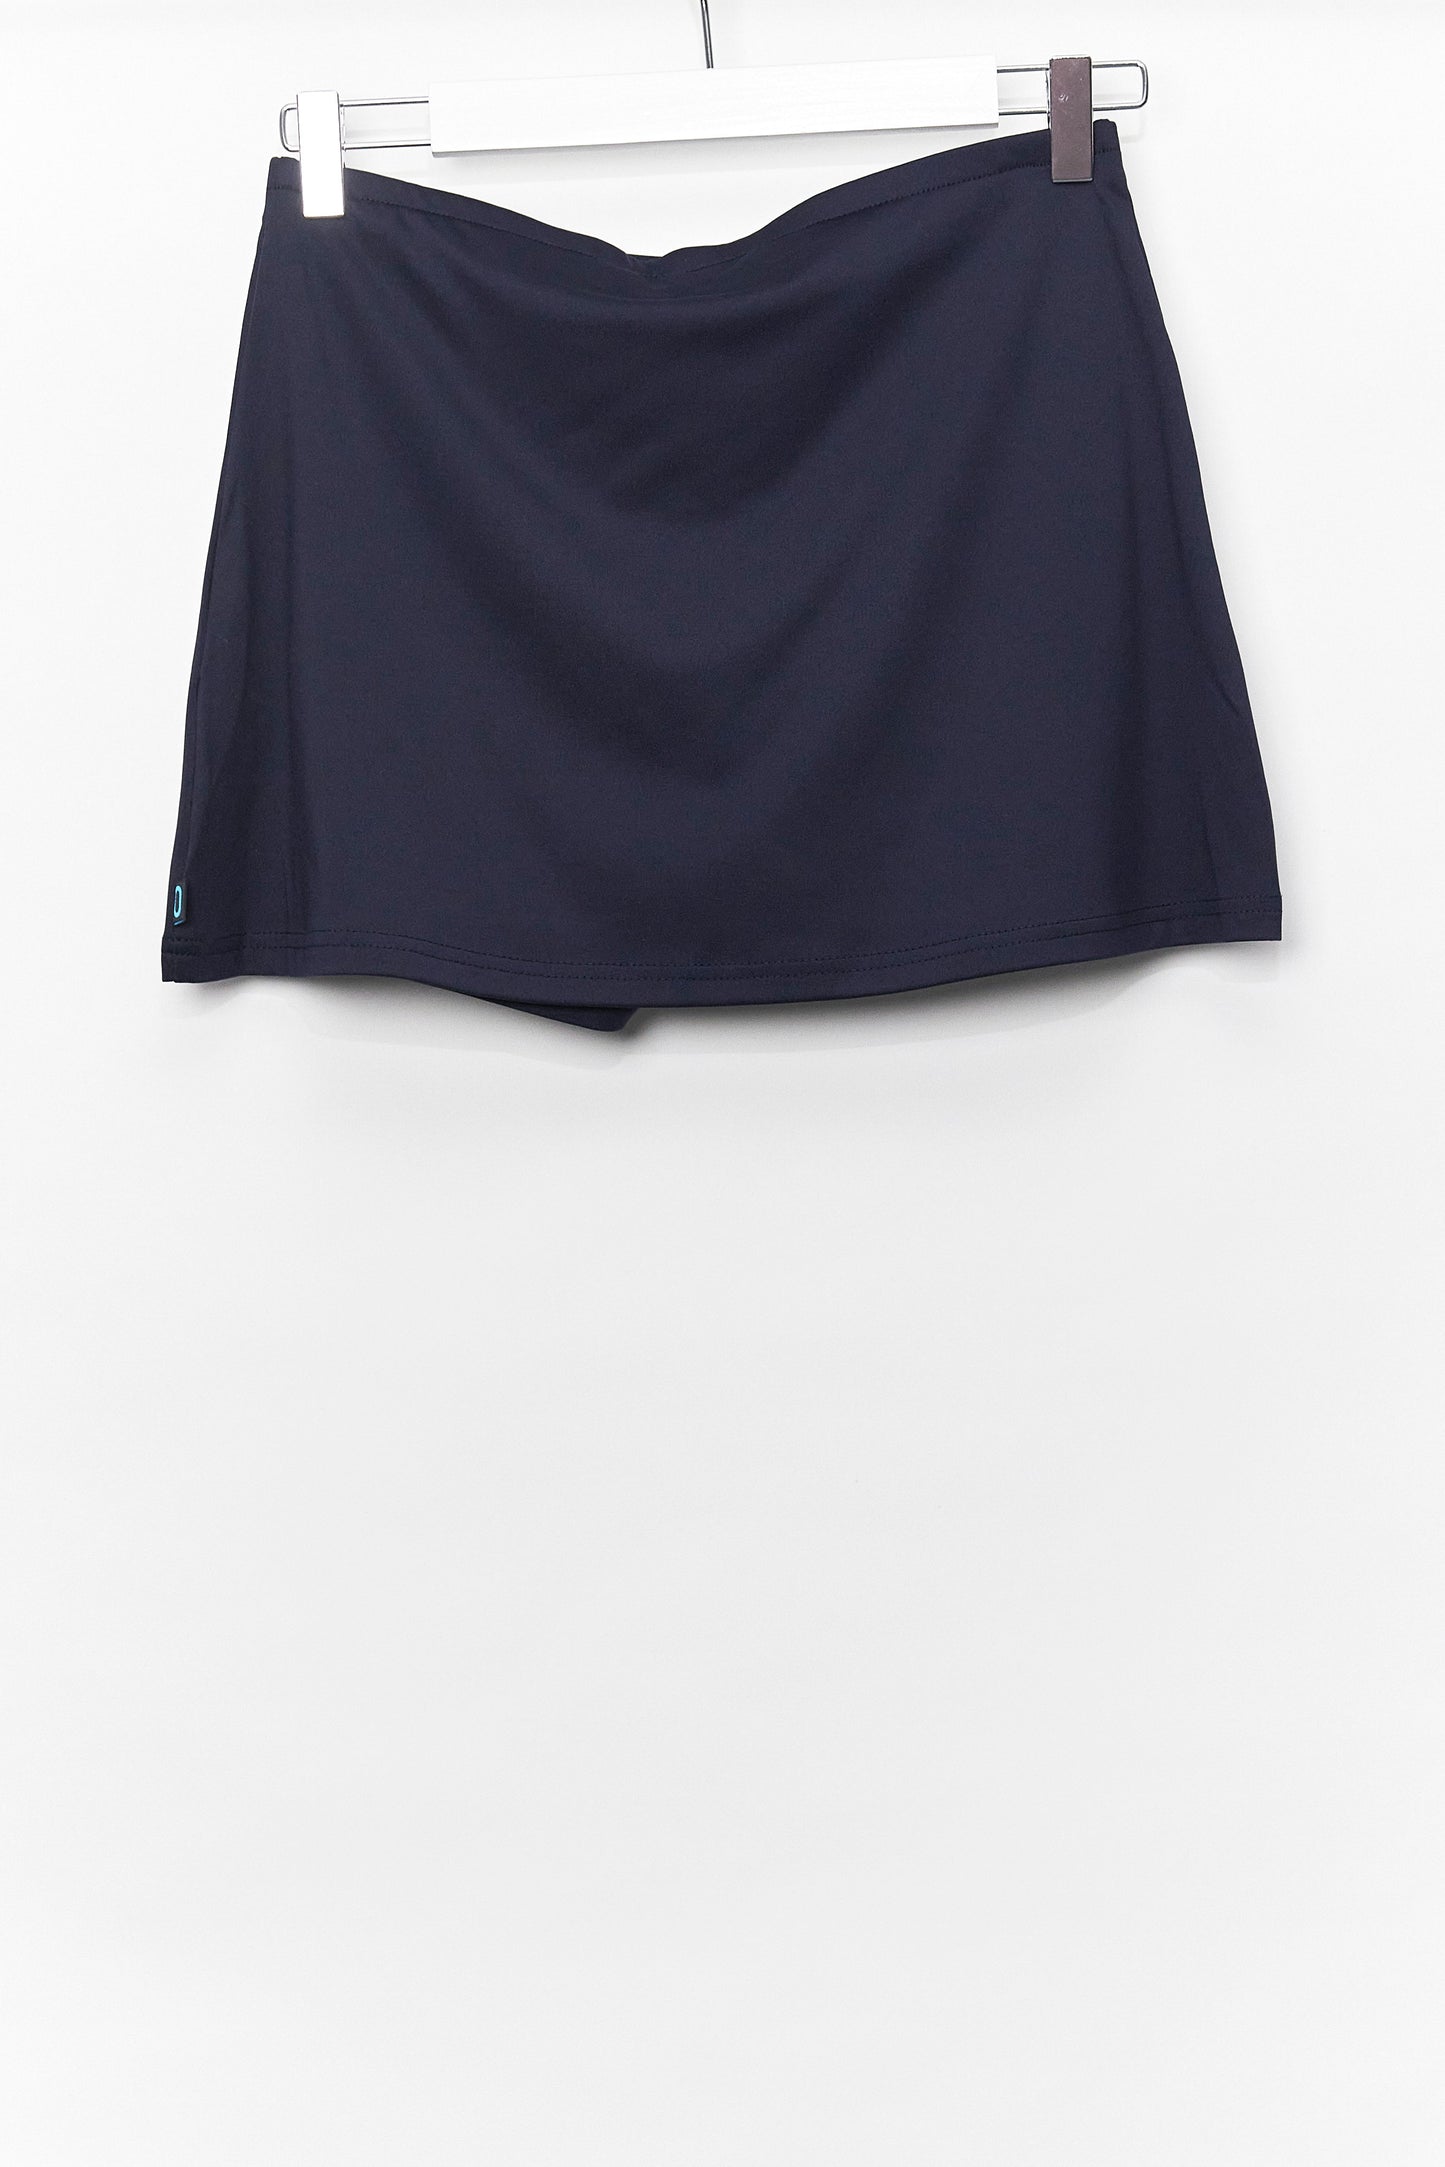 Womens CFBL Navy Sport Skirt Size Small